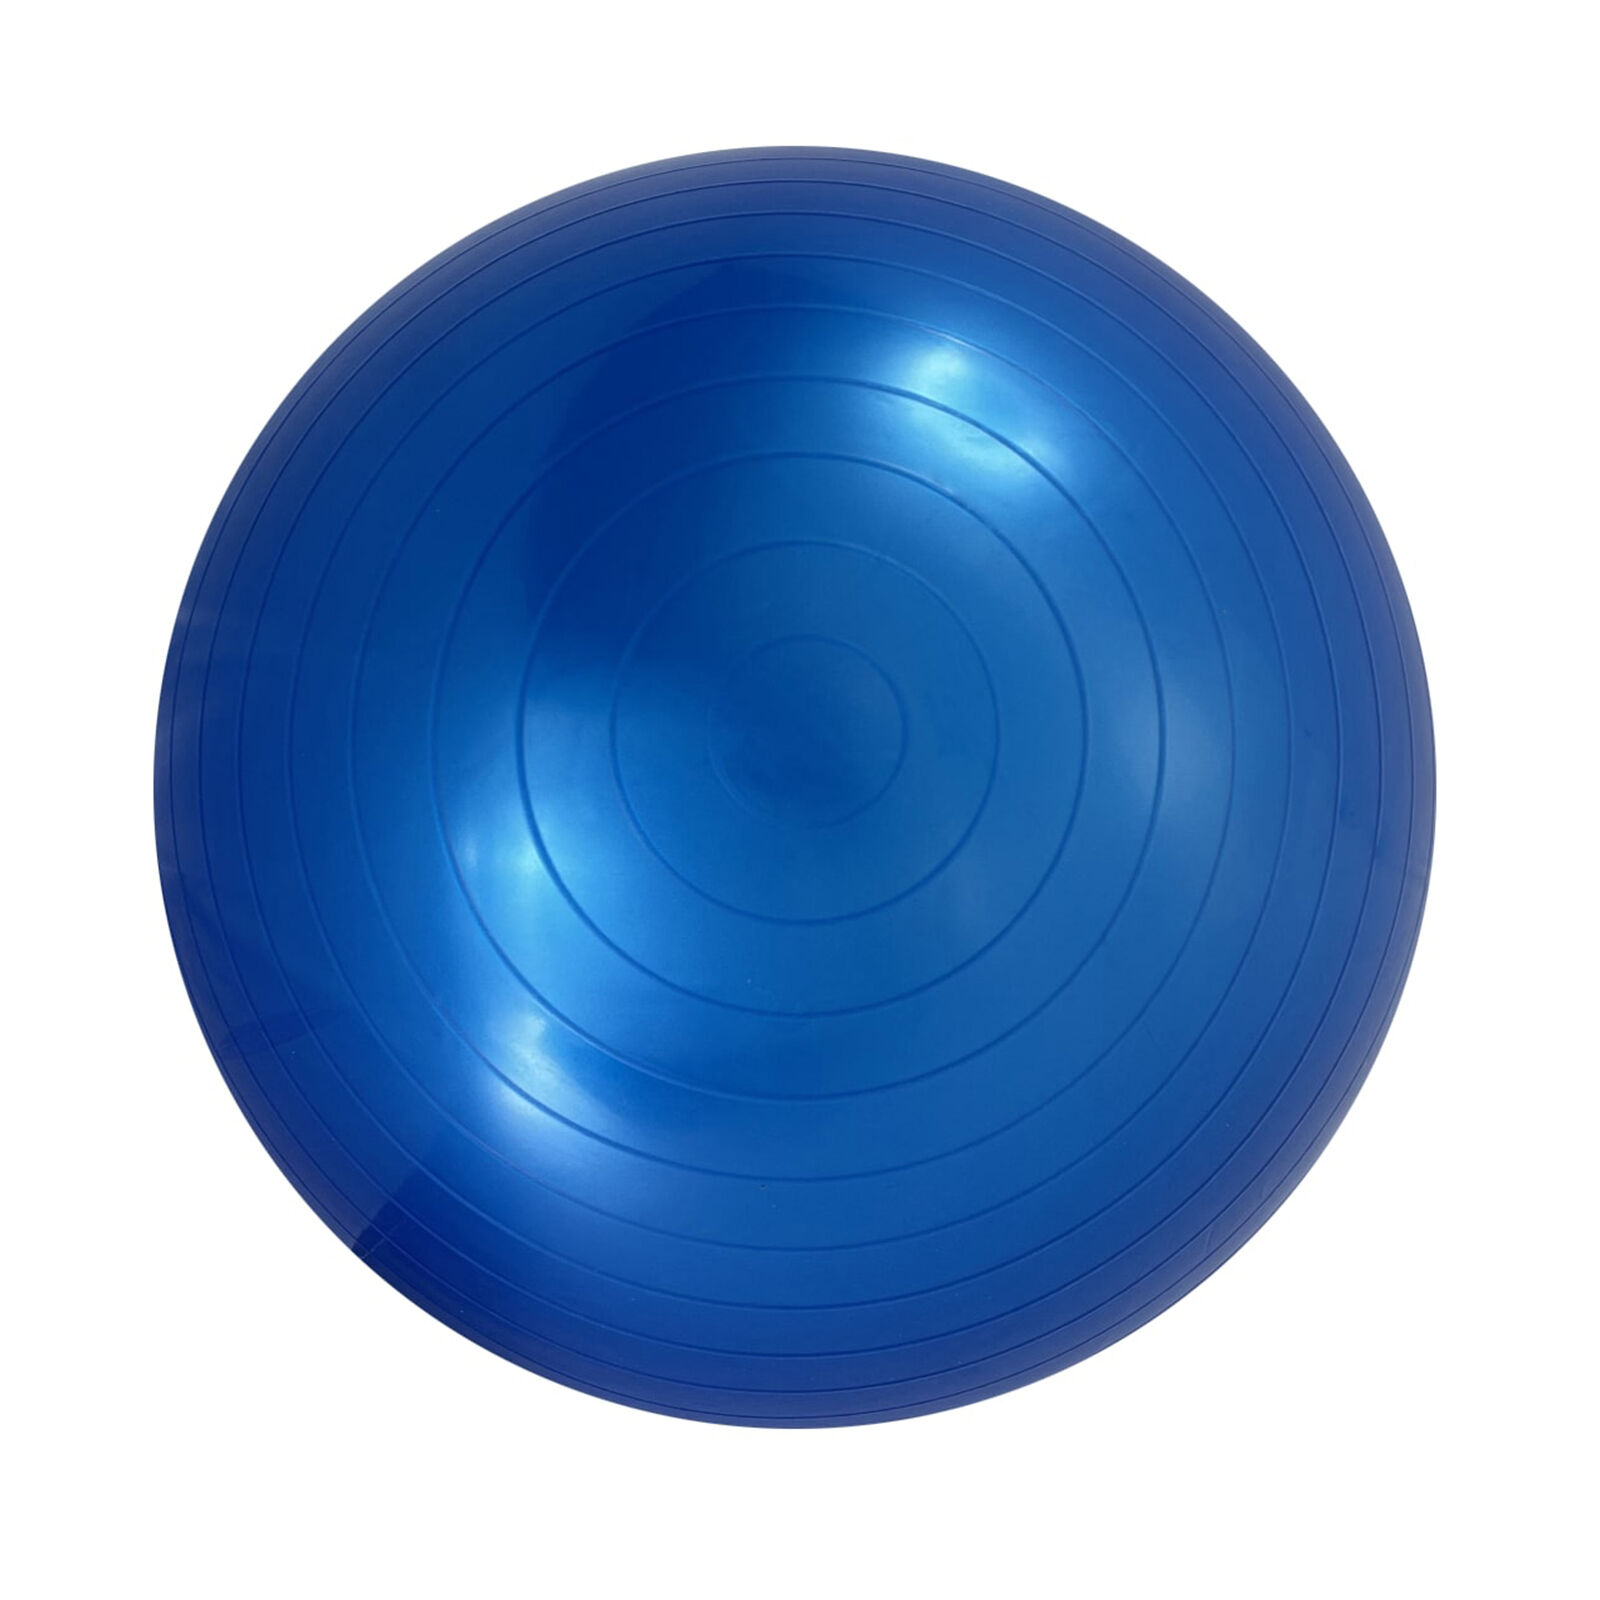 Фитбол с насосом UNIX Fit антивзрыв, 65 см, голубой UNIX Fit™ Фитболы